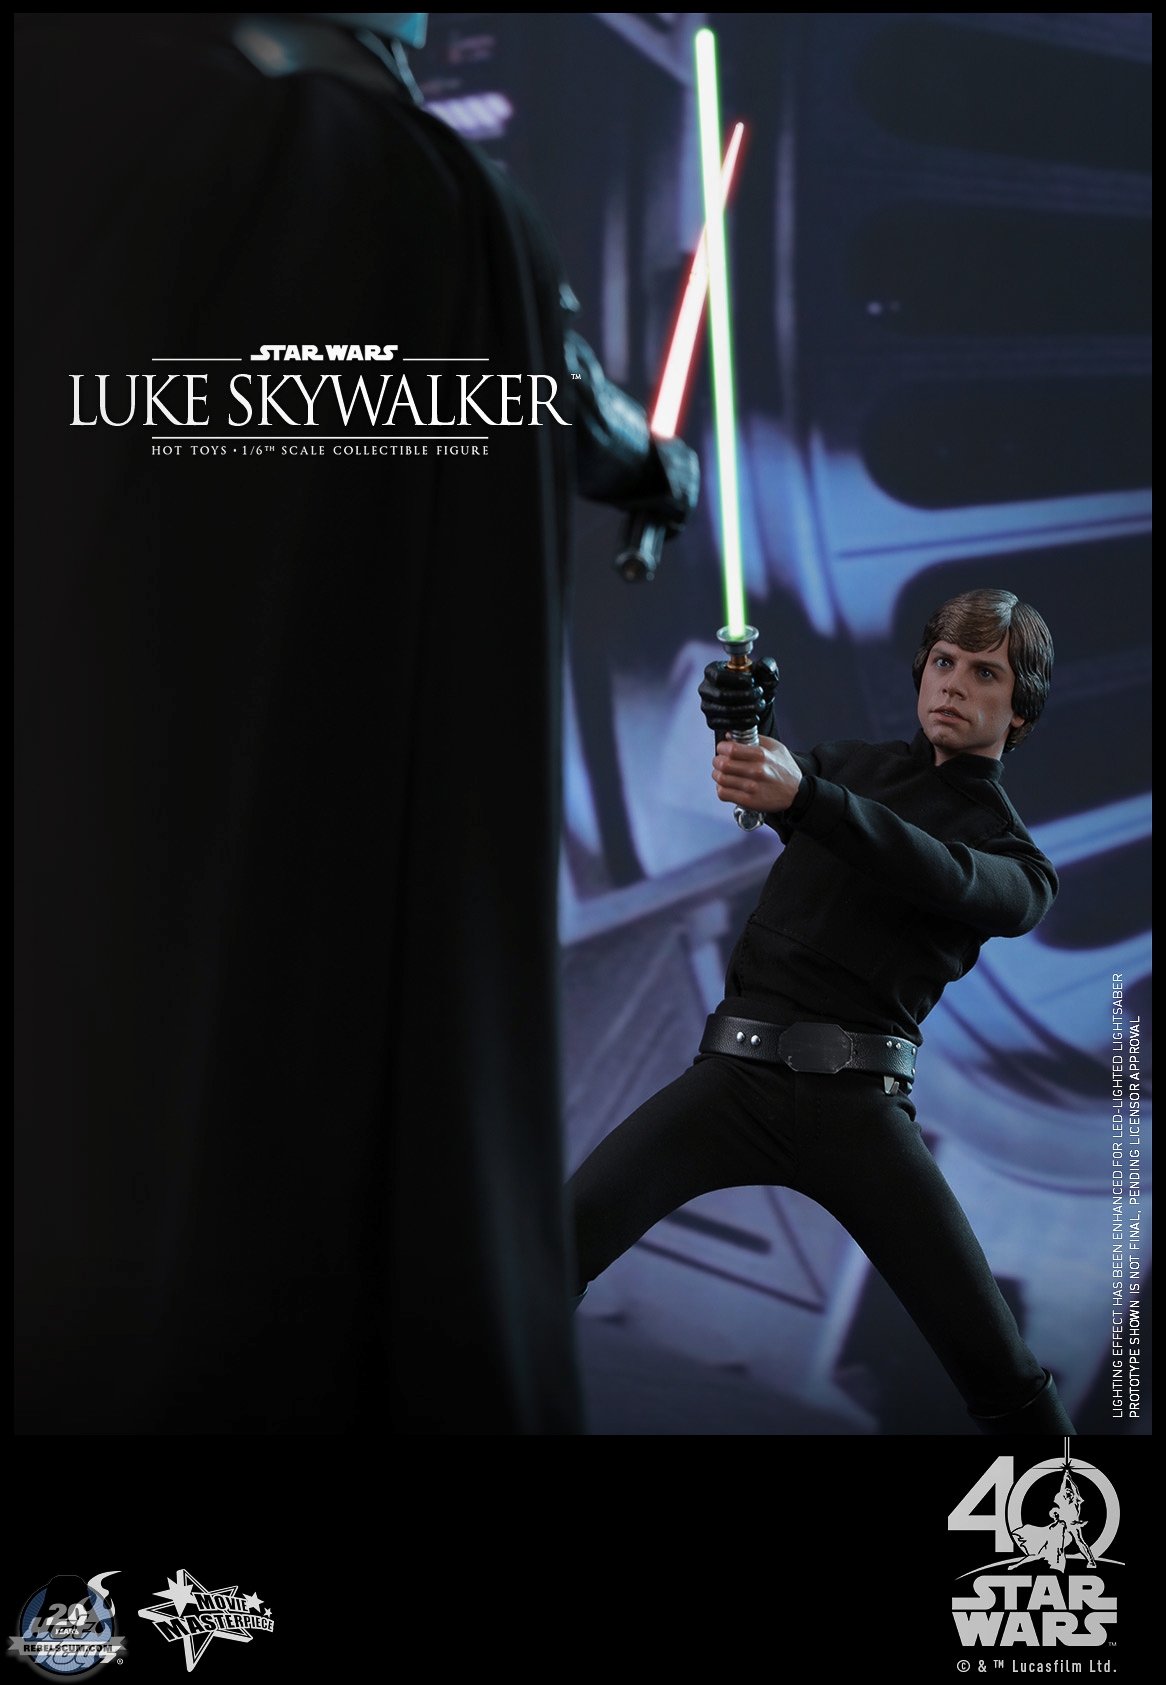 Hot-Toys-MMS429-Return-of-the-Jedi-Luke-Skywalker-003.jpg